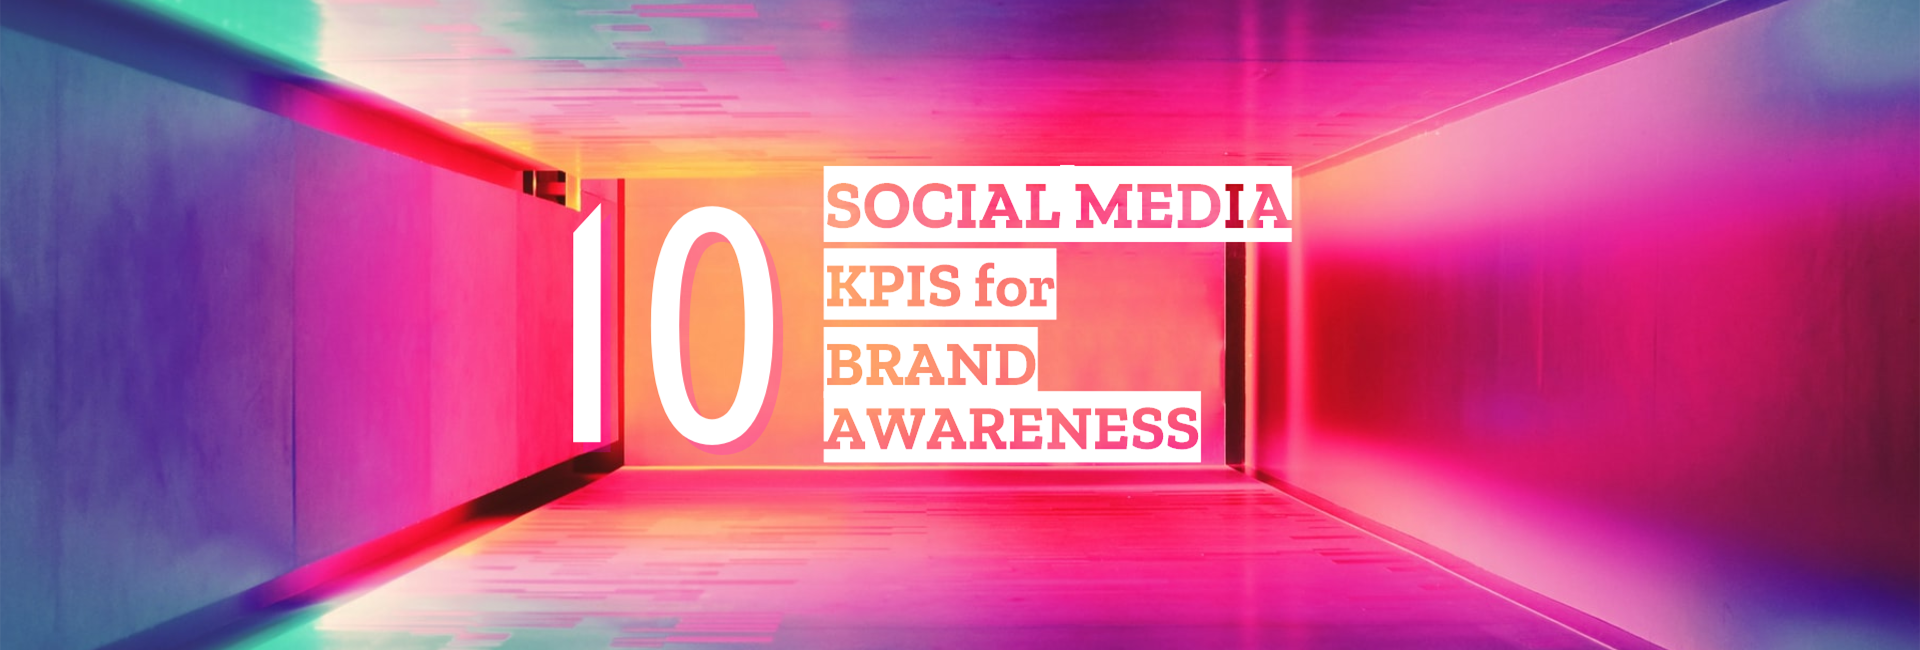 10 Social Media KPIs for Brand Awareness